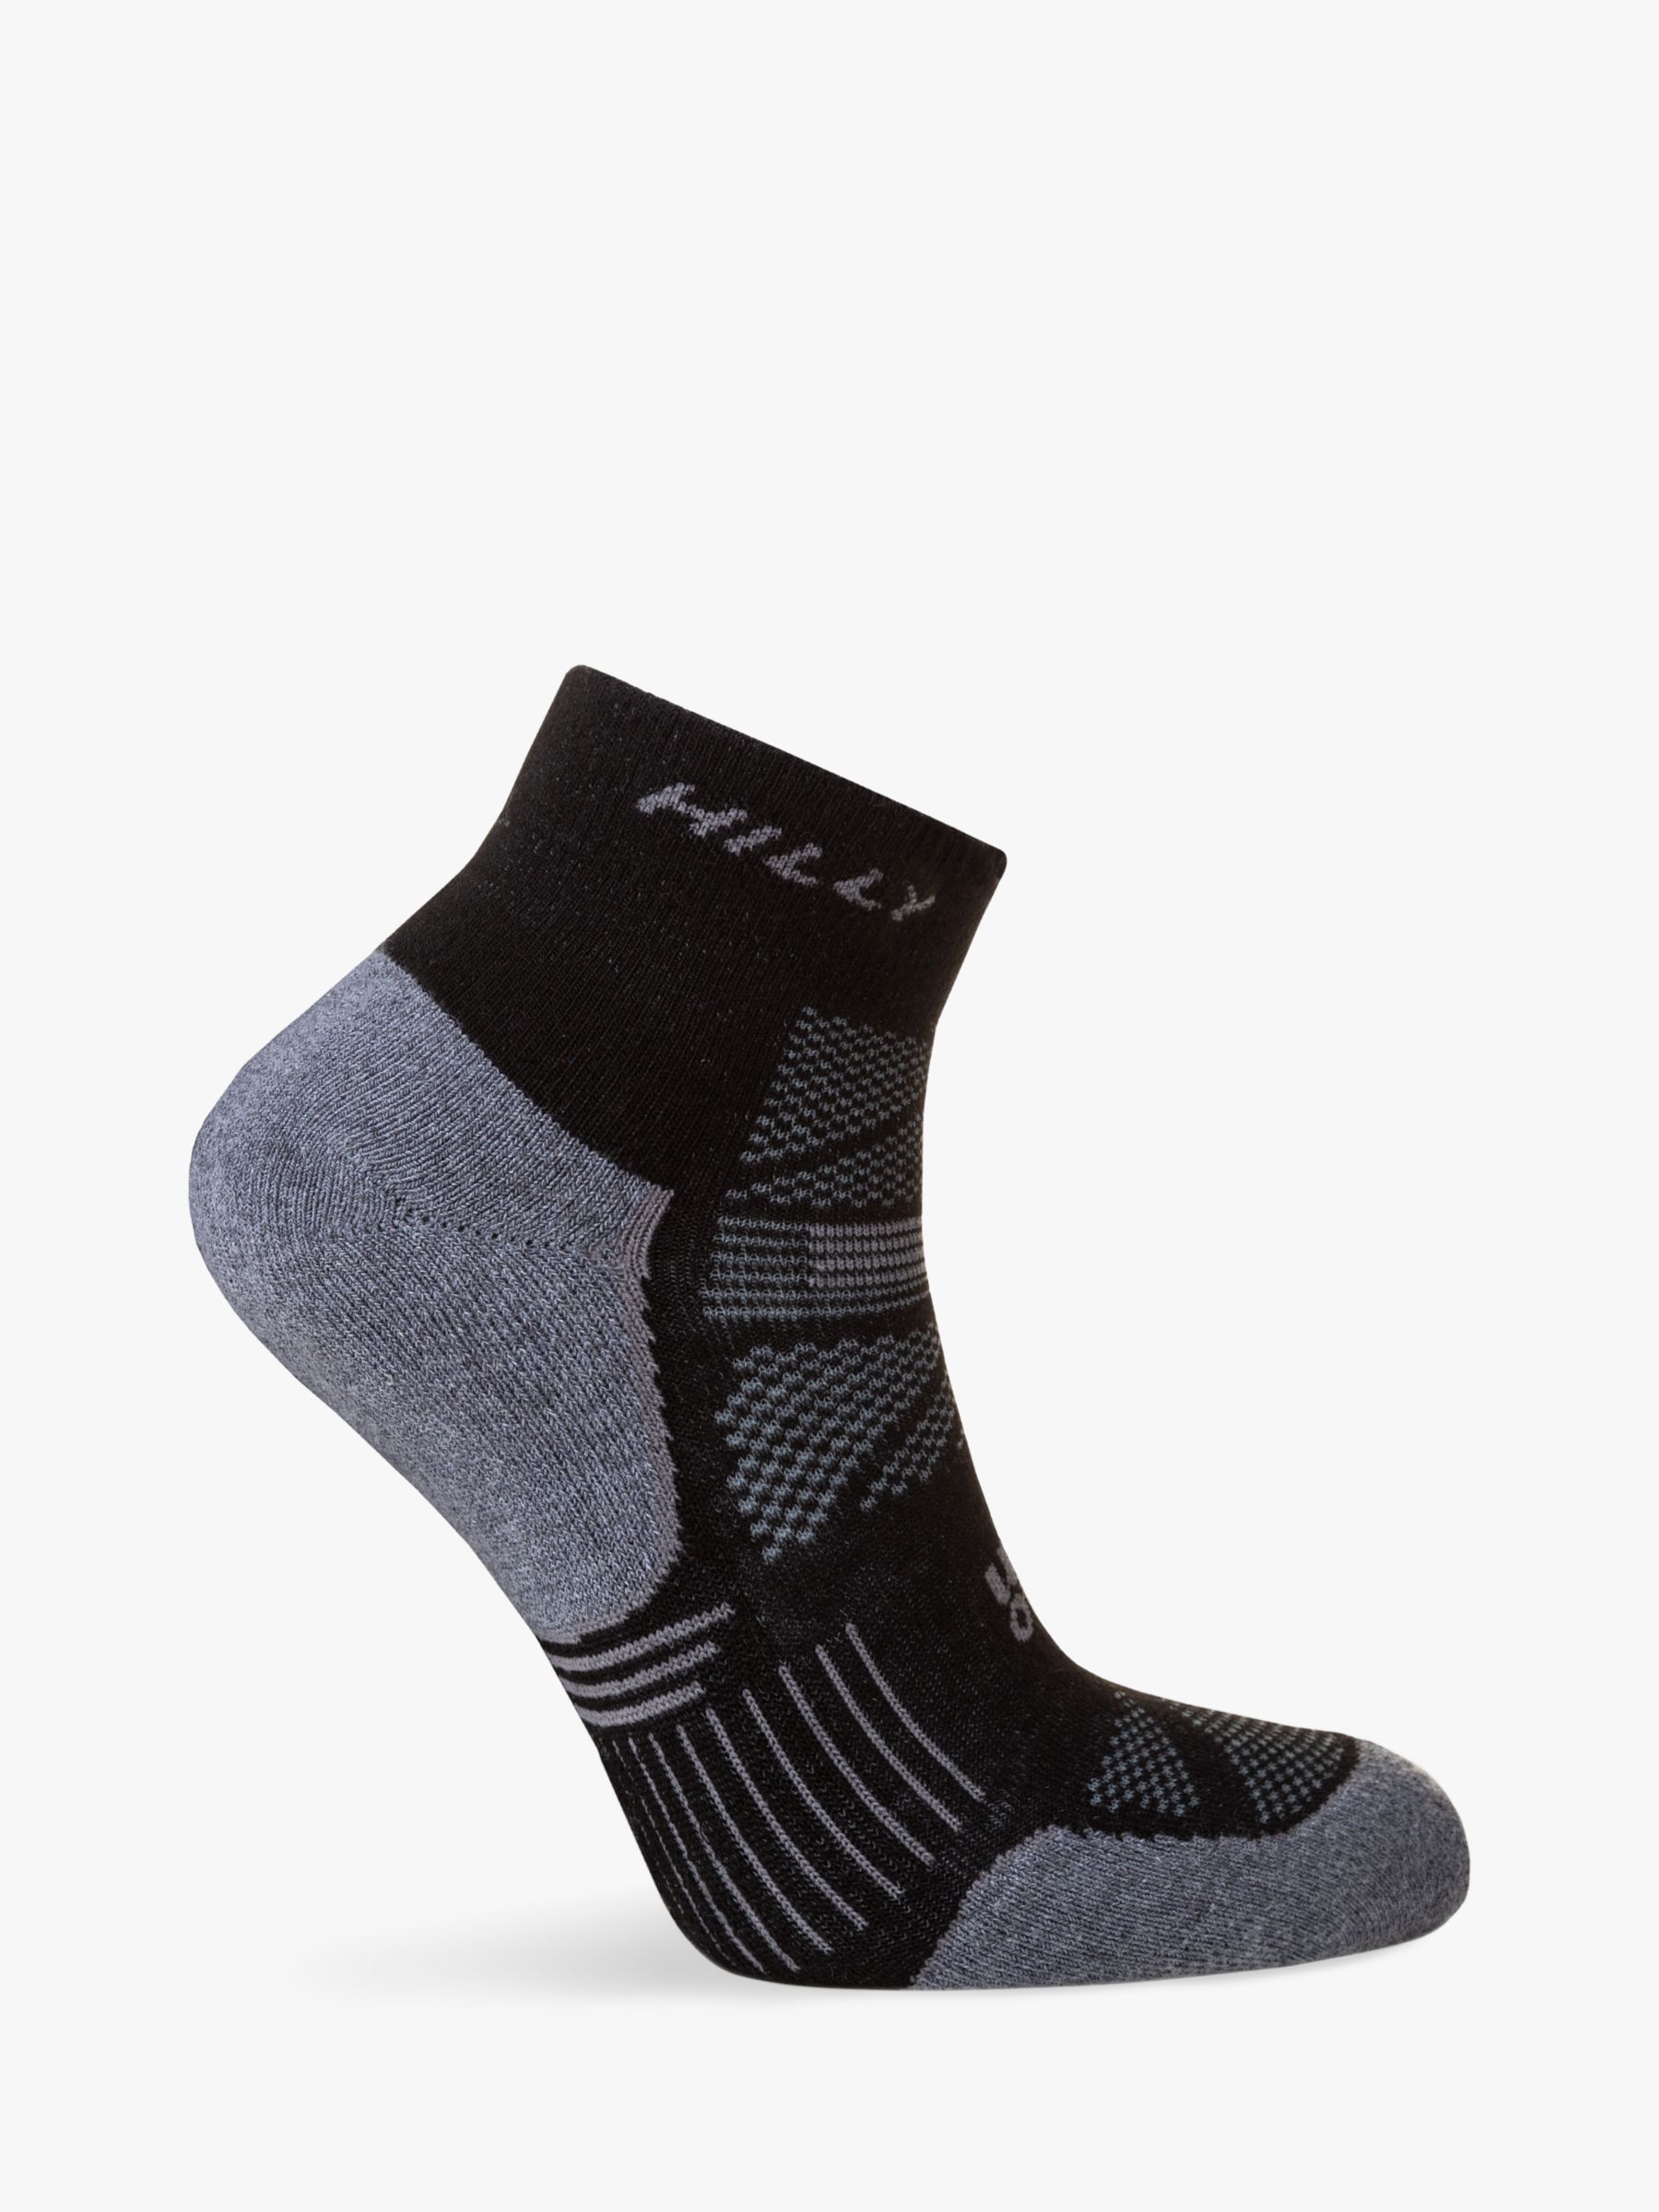 Buy Hilly Supreme Anklet Running Socks Online at johnlewis.com